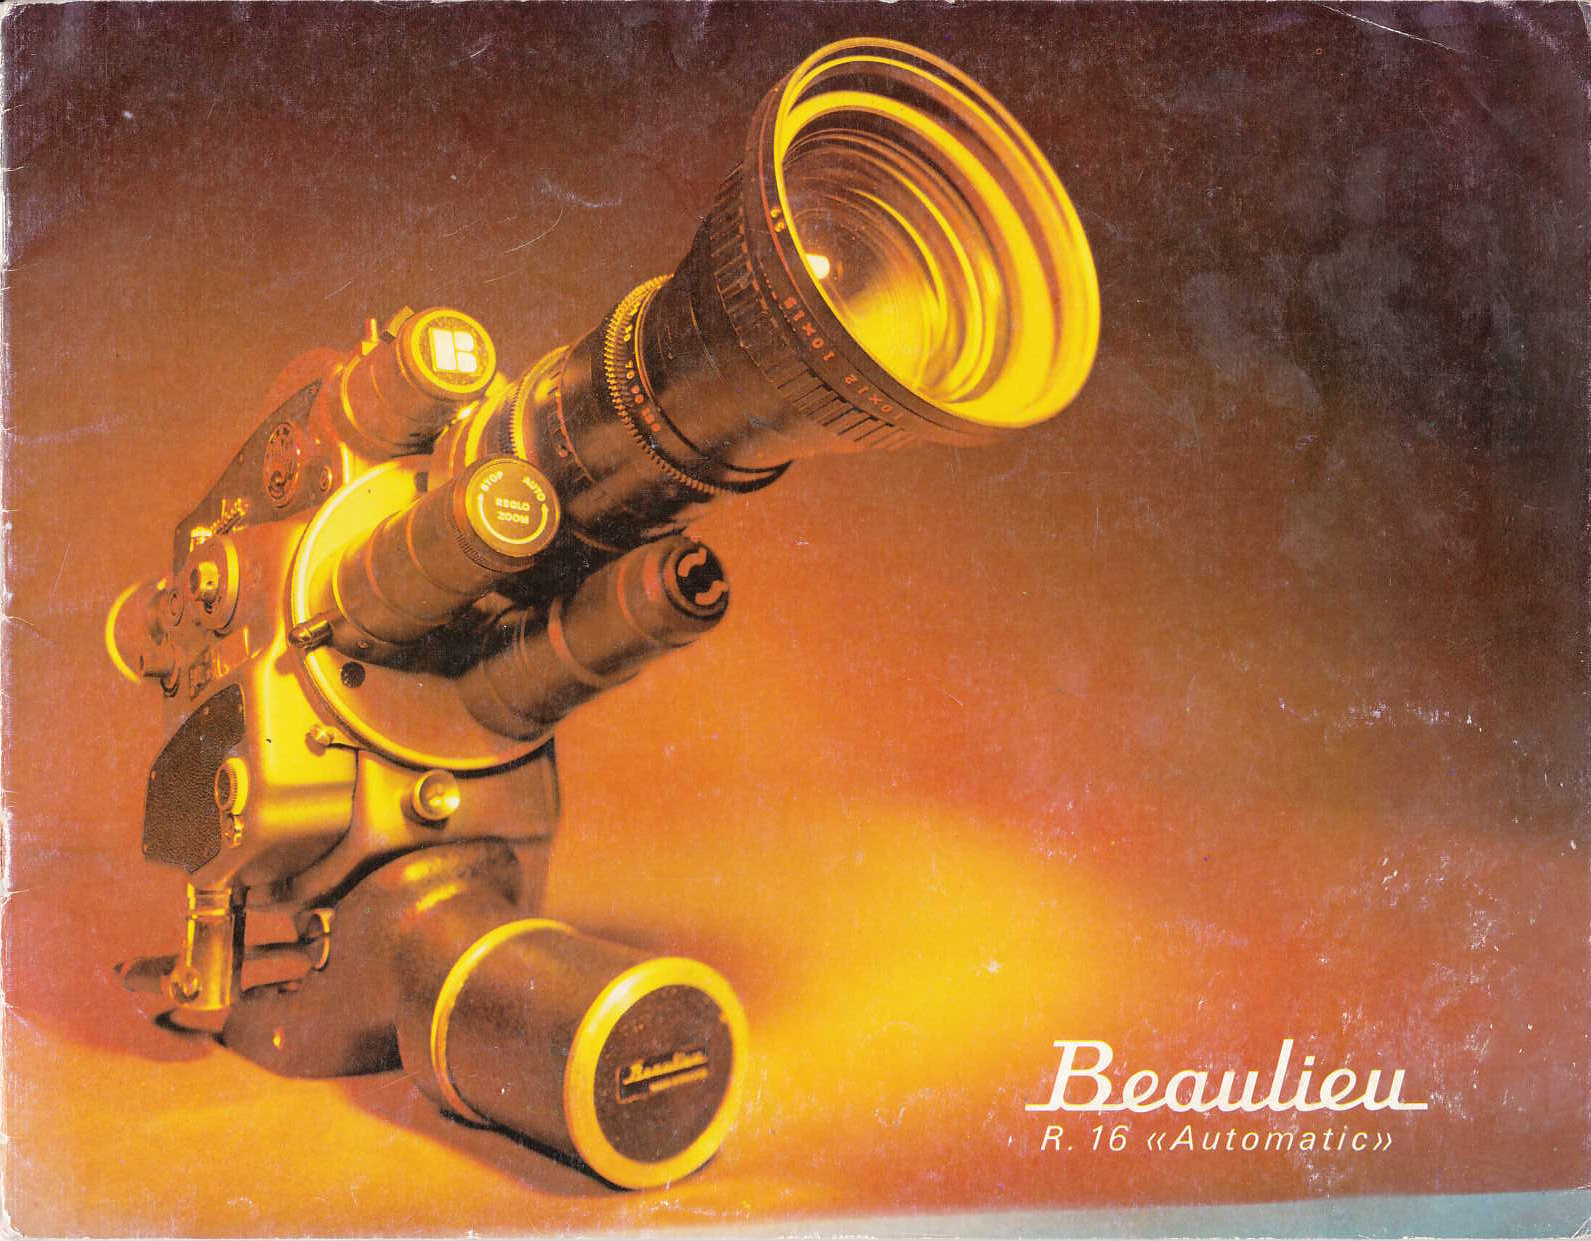 BEAULIEU R16 "Automatic" (Brochure publicitaire fr)